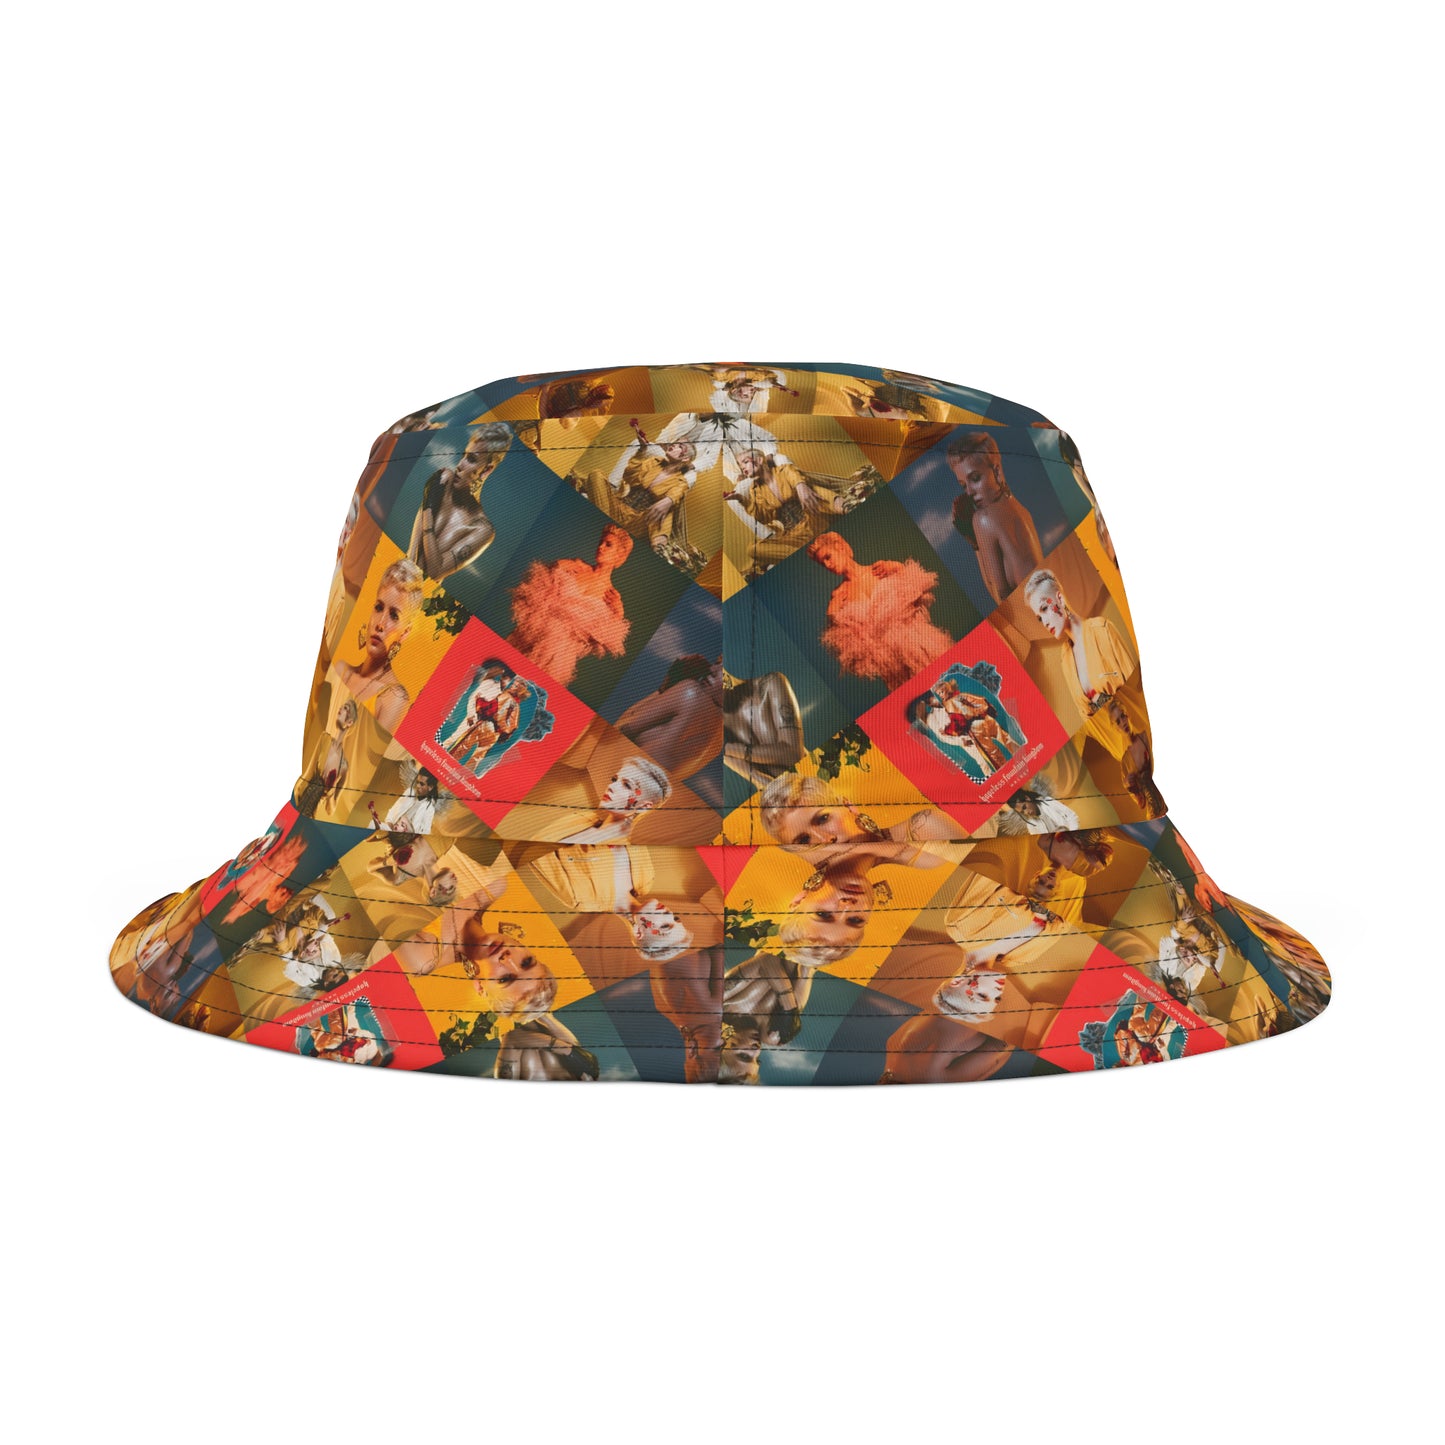 Halsey Hopeless Fountain Kingdom Mosaic Bucket Hat